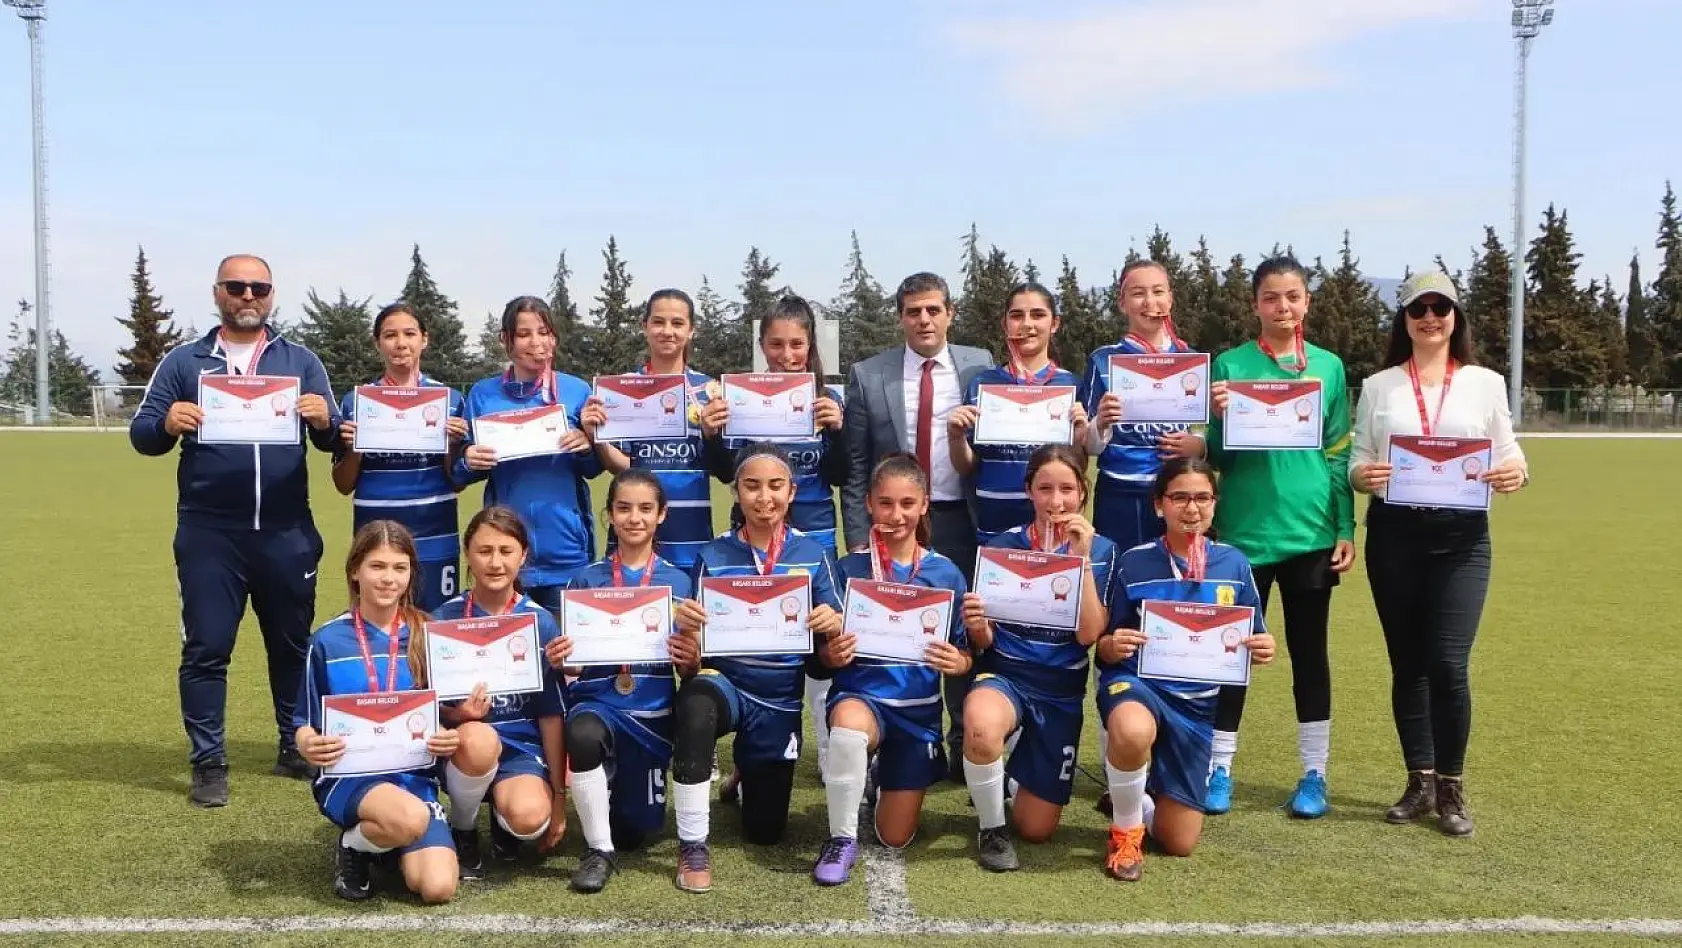 Fethiye'deki okulun kız futbol takımı tüm maçlarını kazandı